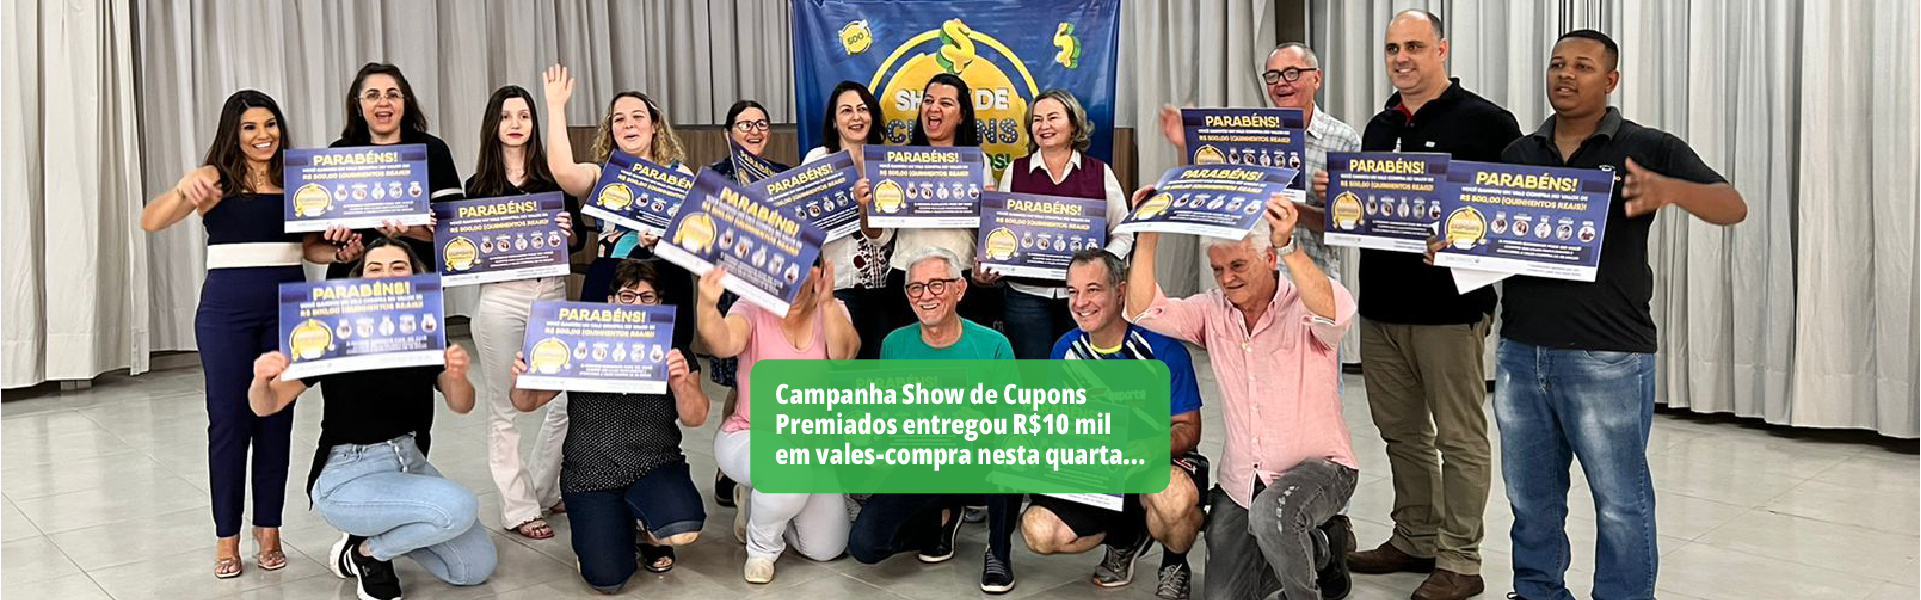 Campanha Show de Cupons Premiados entregou R$10 mil em vales-compra nesta quarta-feira